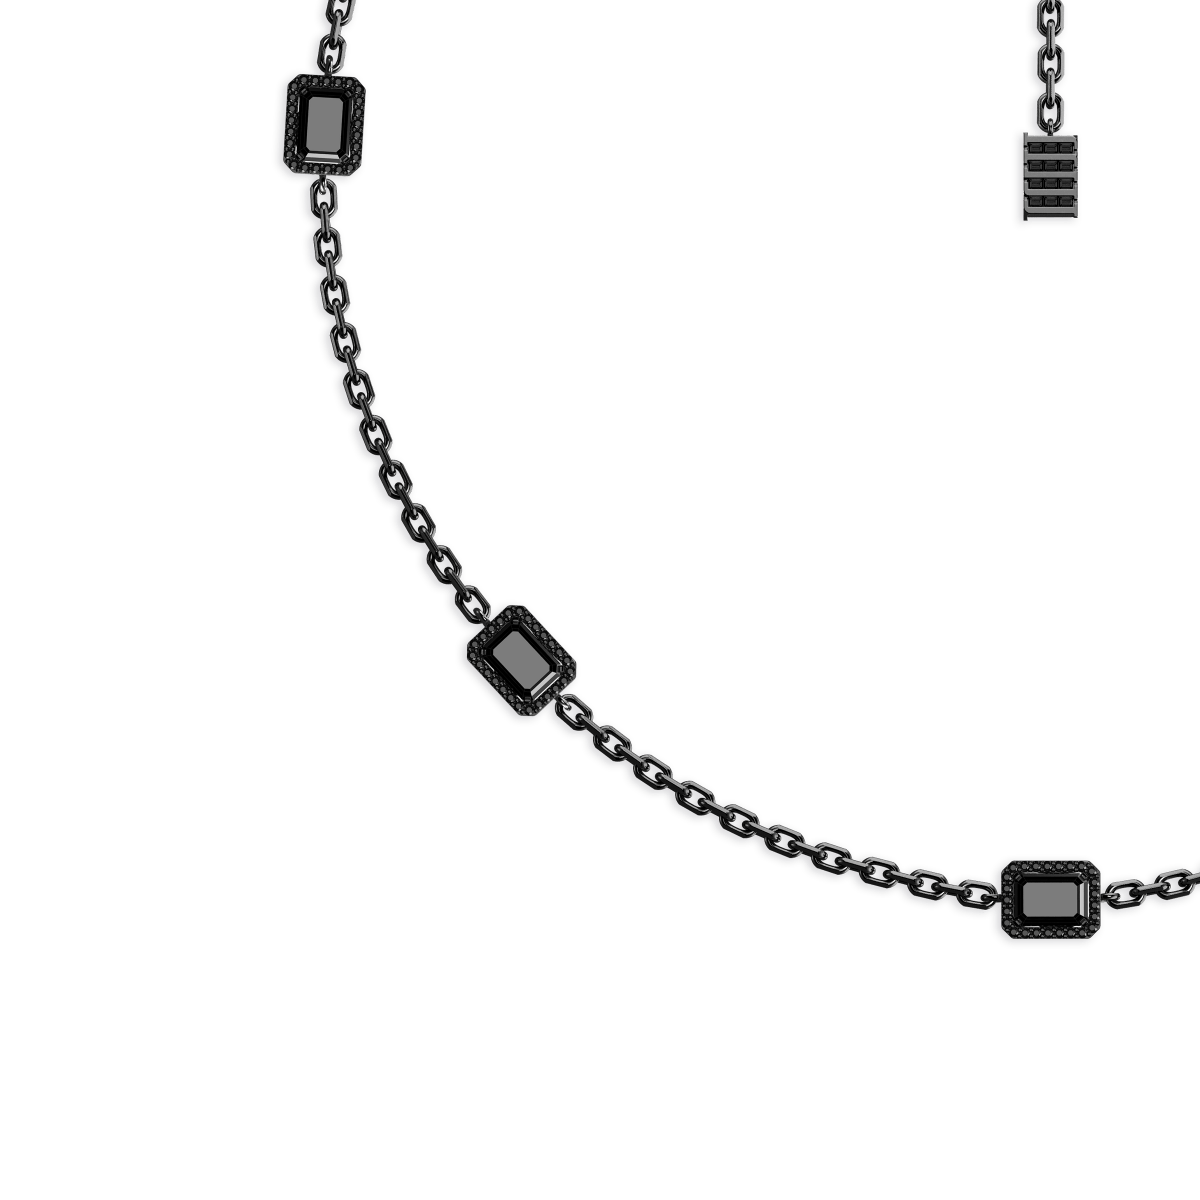 Jewel Multi Charm Necklace Black Onyx